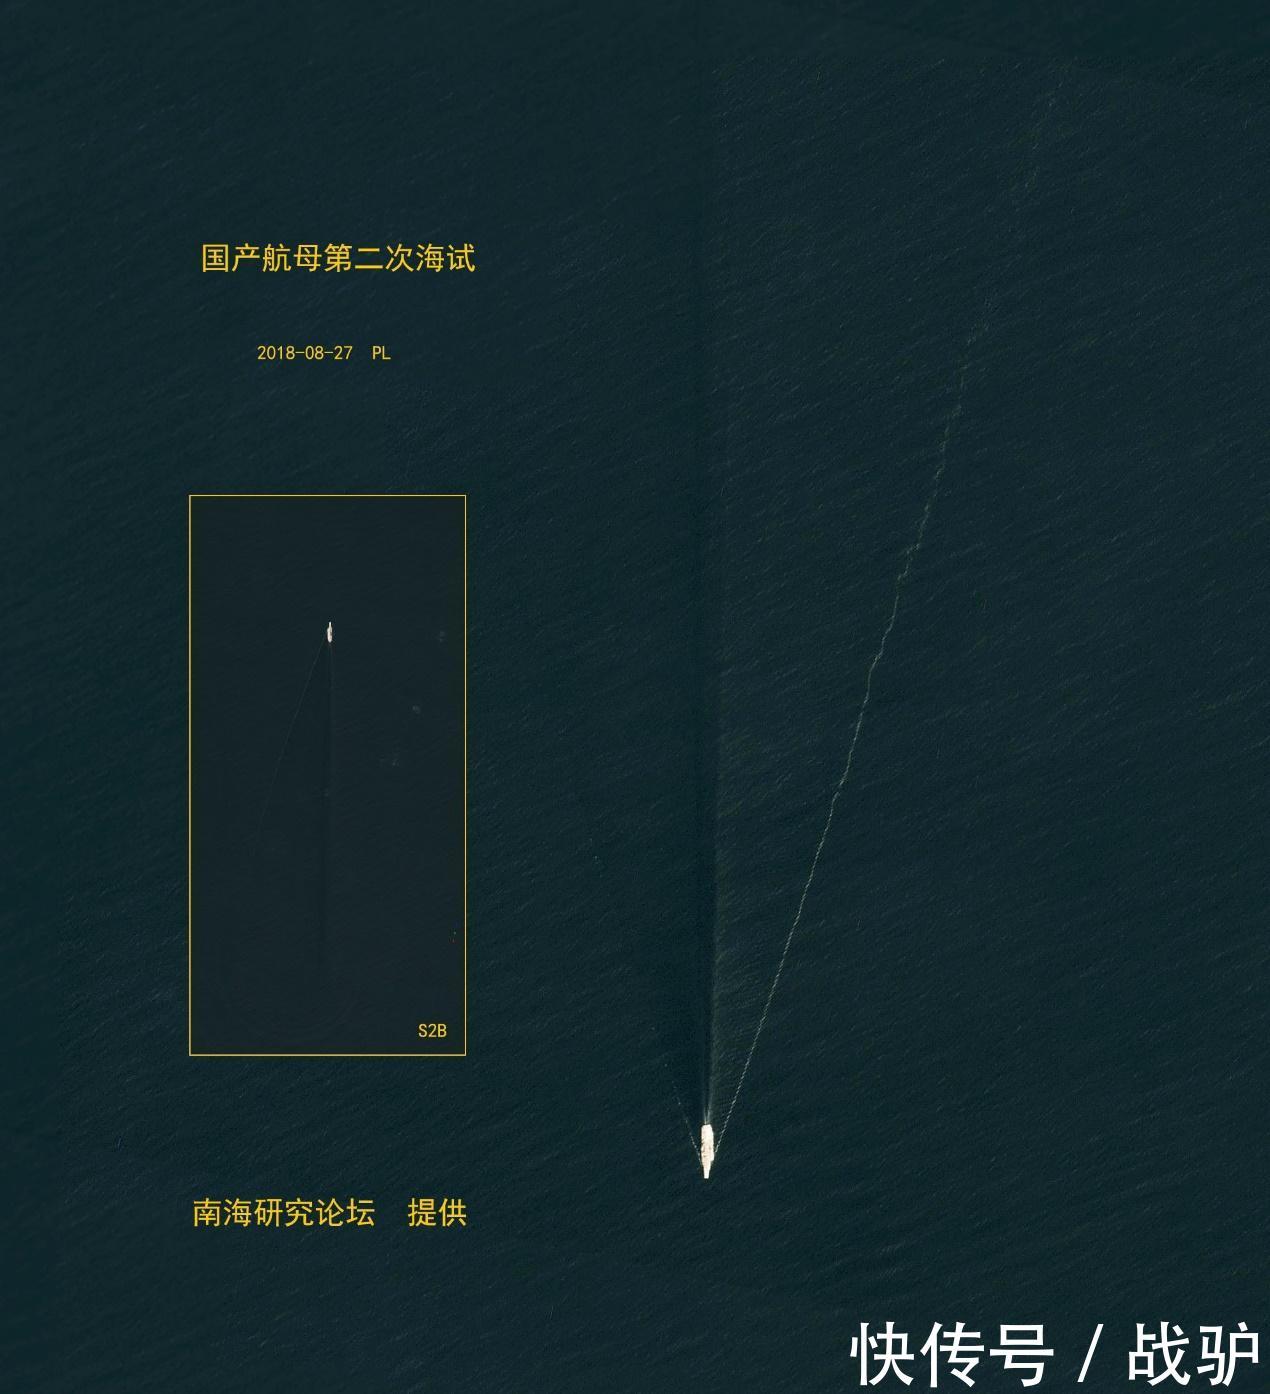 中国航母刚离港就遭美卫星偷拍 国产卫星:不怕